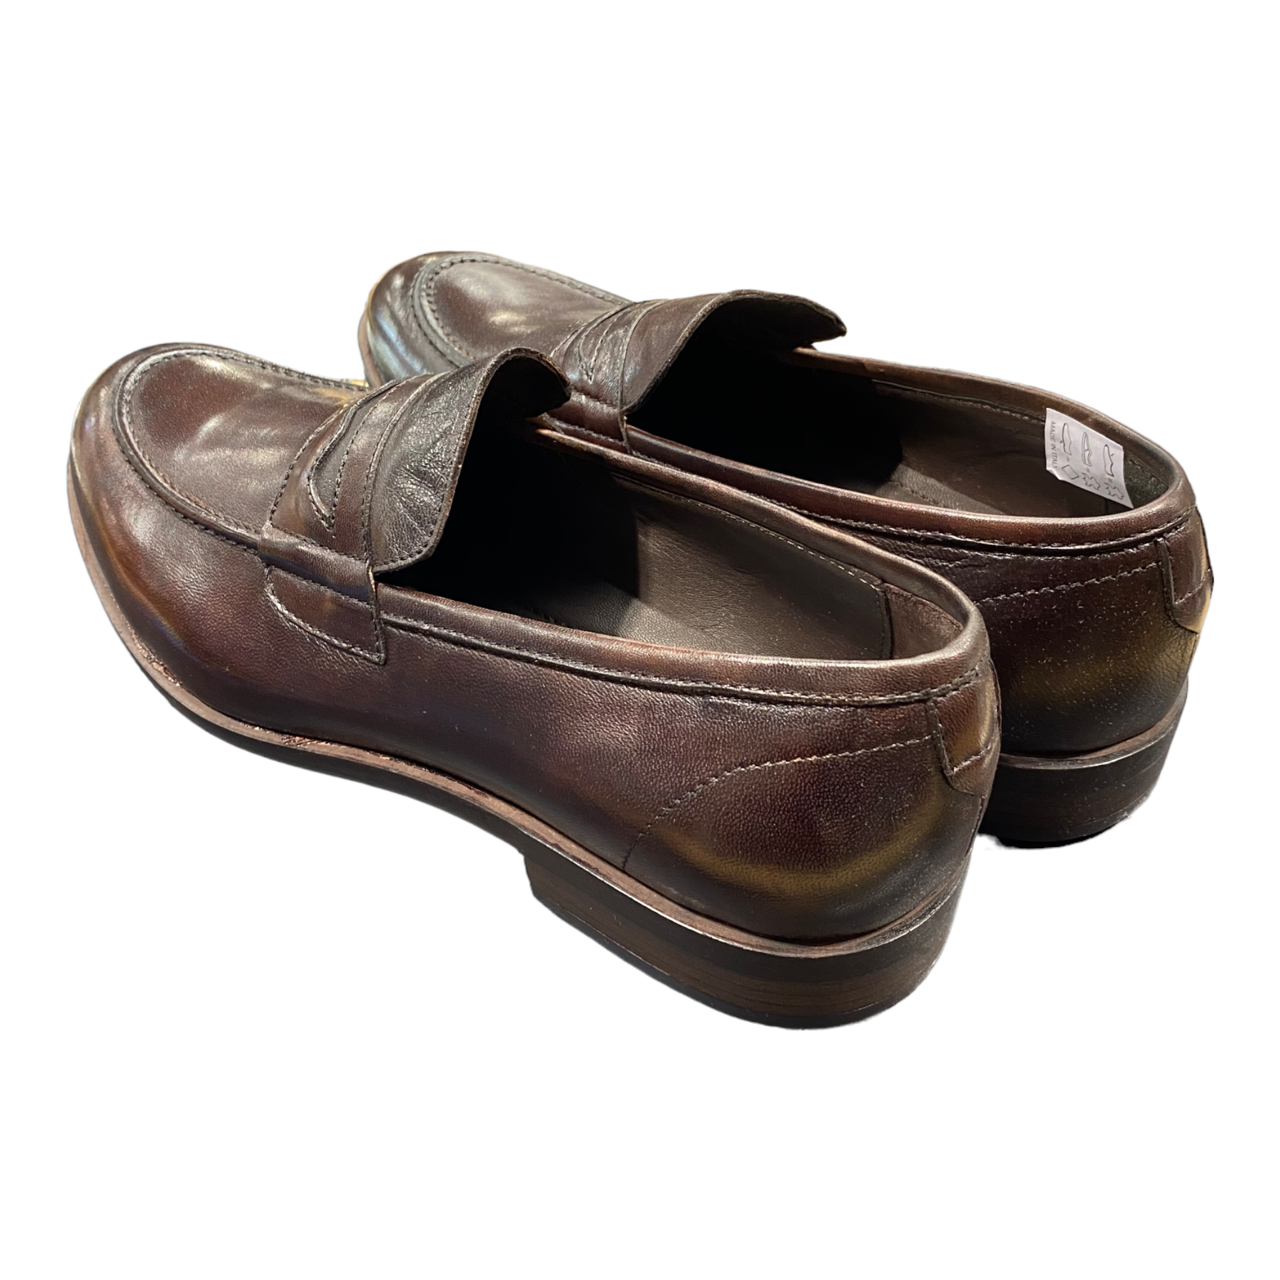 Emporio Italia - Italianino Leather Loafer - Brown